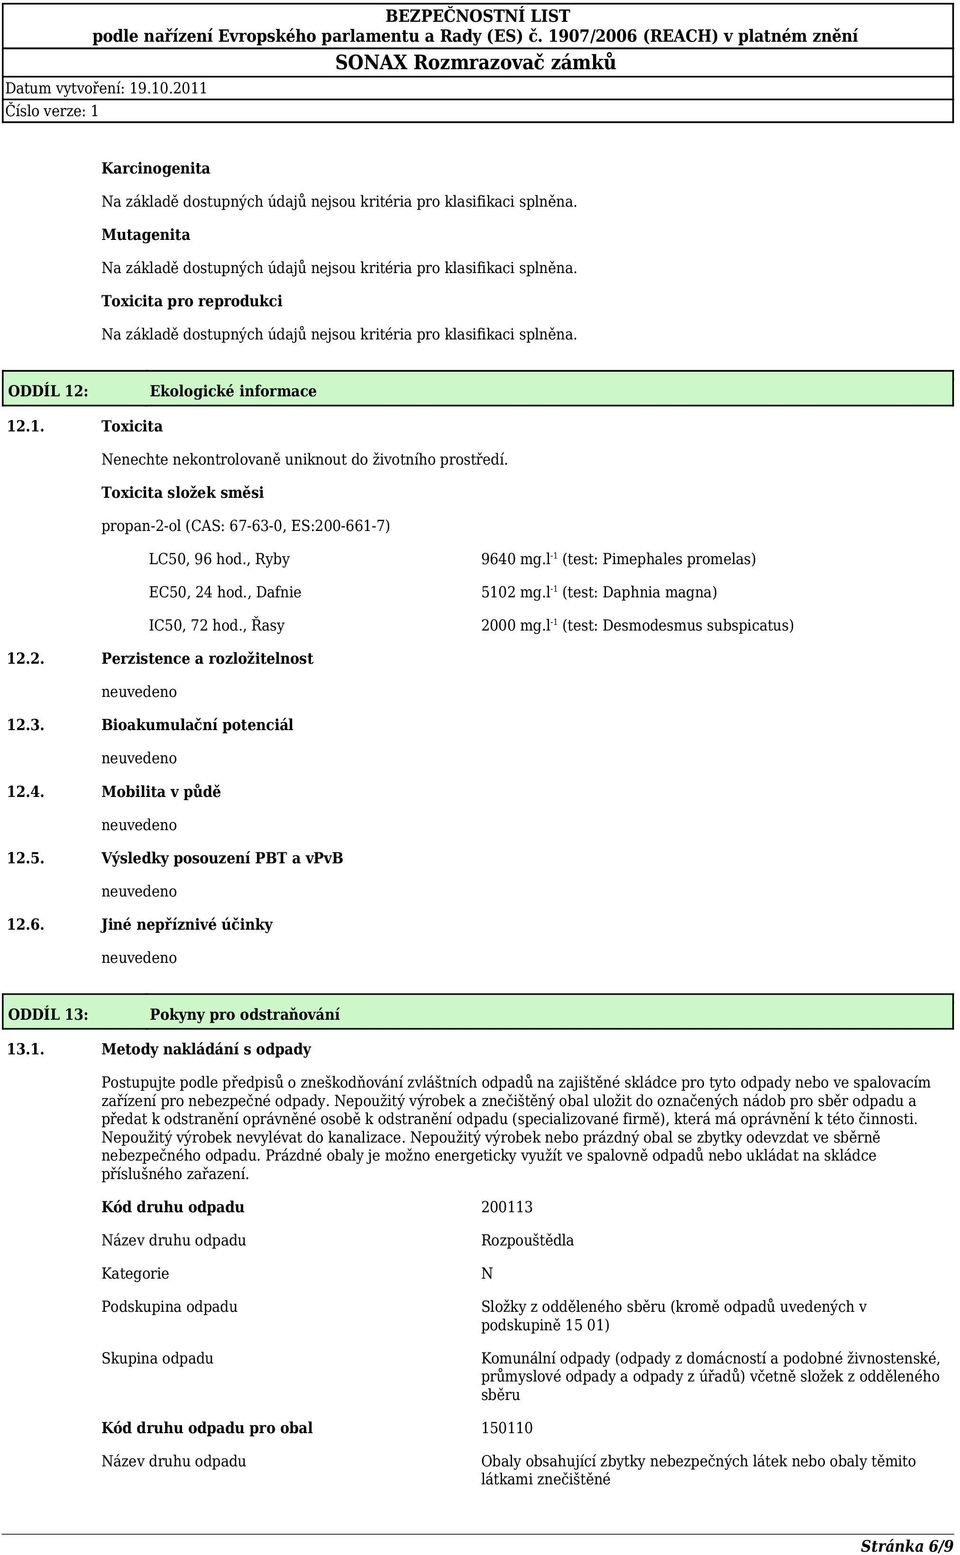 l -1 (test: Daphnia magna) 2000 mg.l -1 (test: Desmodesmus subspicatus) 12.2. Perzistence a rozložitelnost 12.3. Bioakumulační potenciál 12.4. Mobilita v půdě 12.5. Výsledky posouzení PBT a vpvb 12.6.